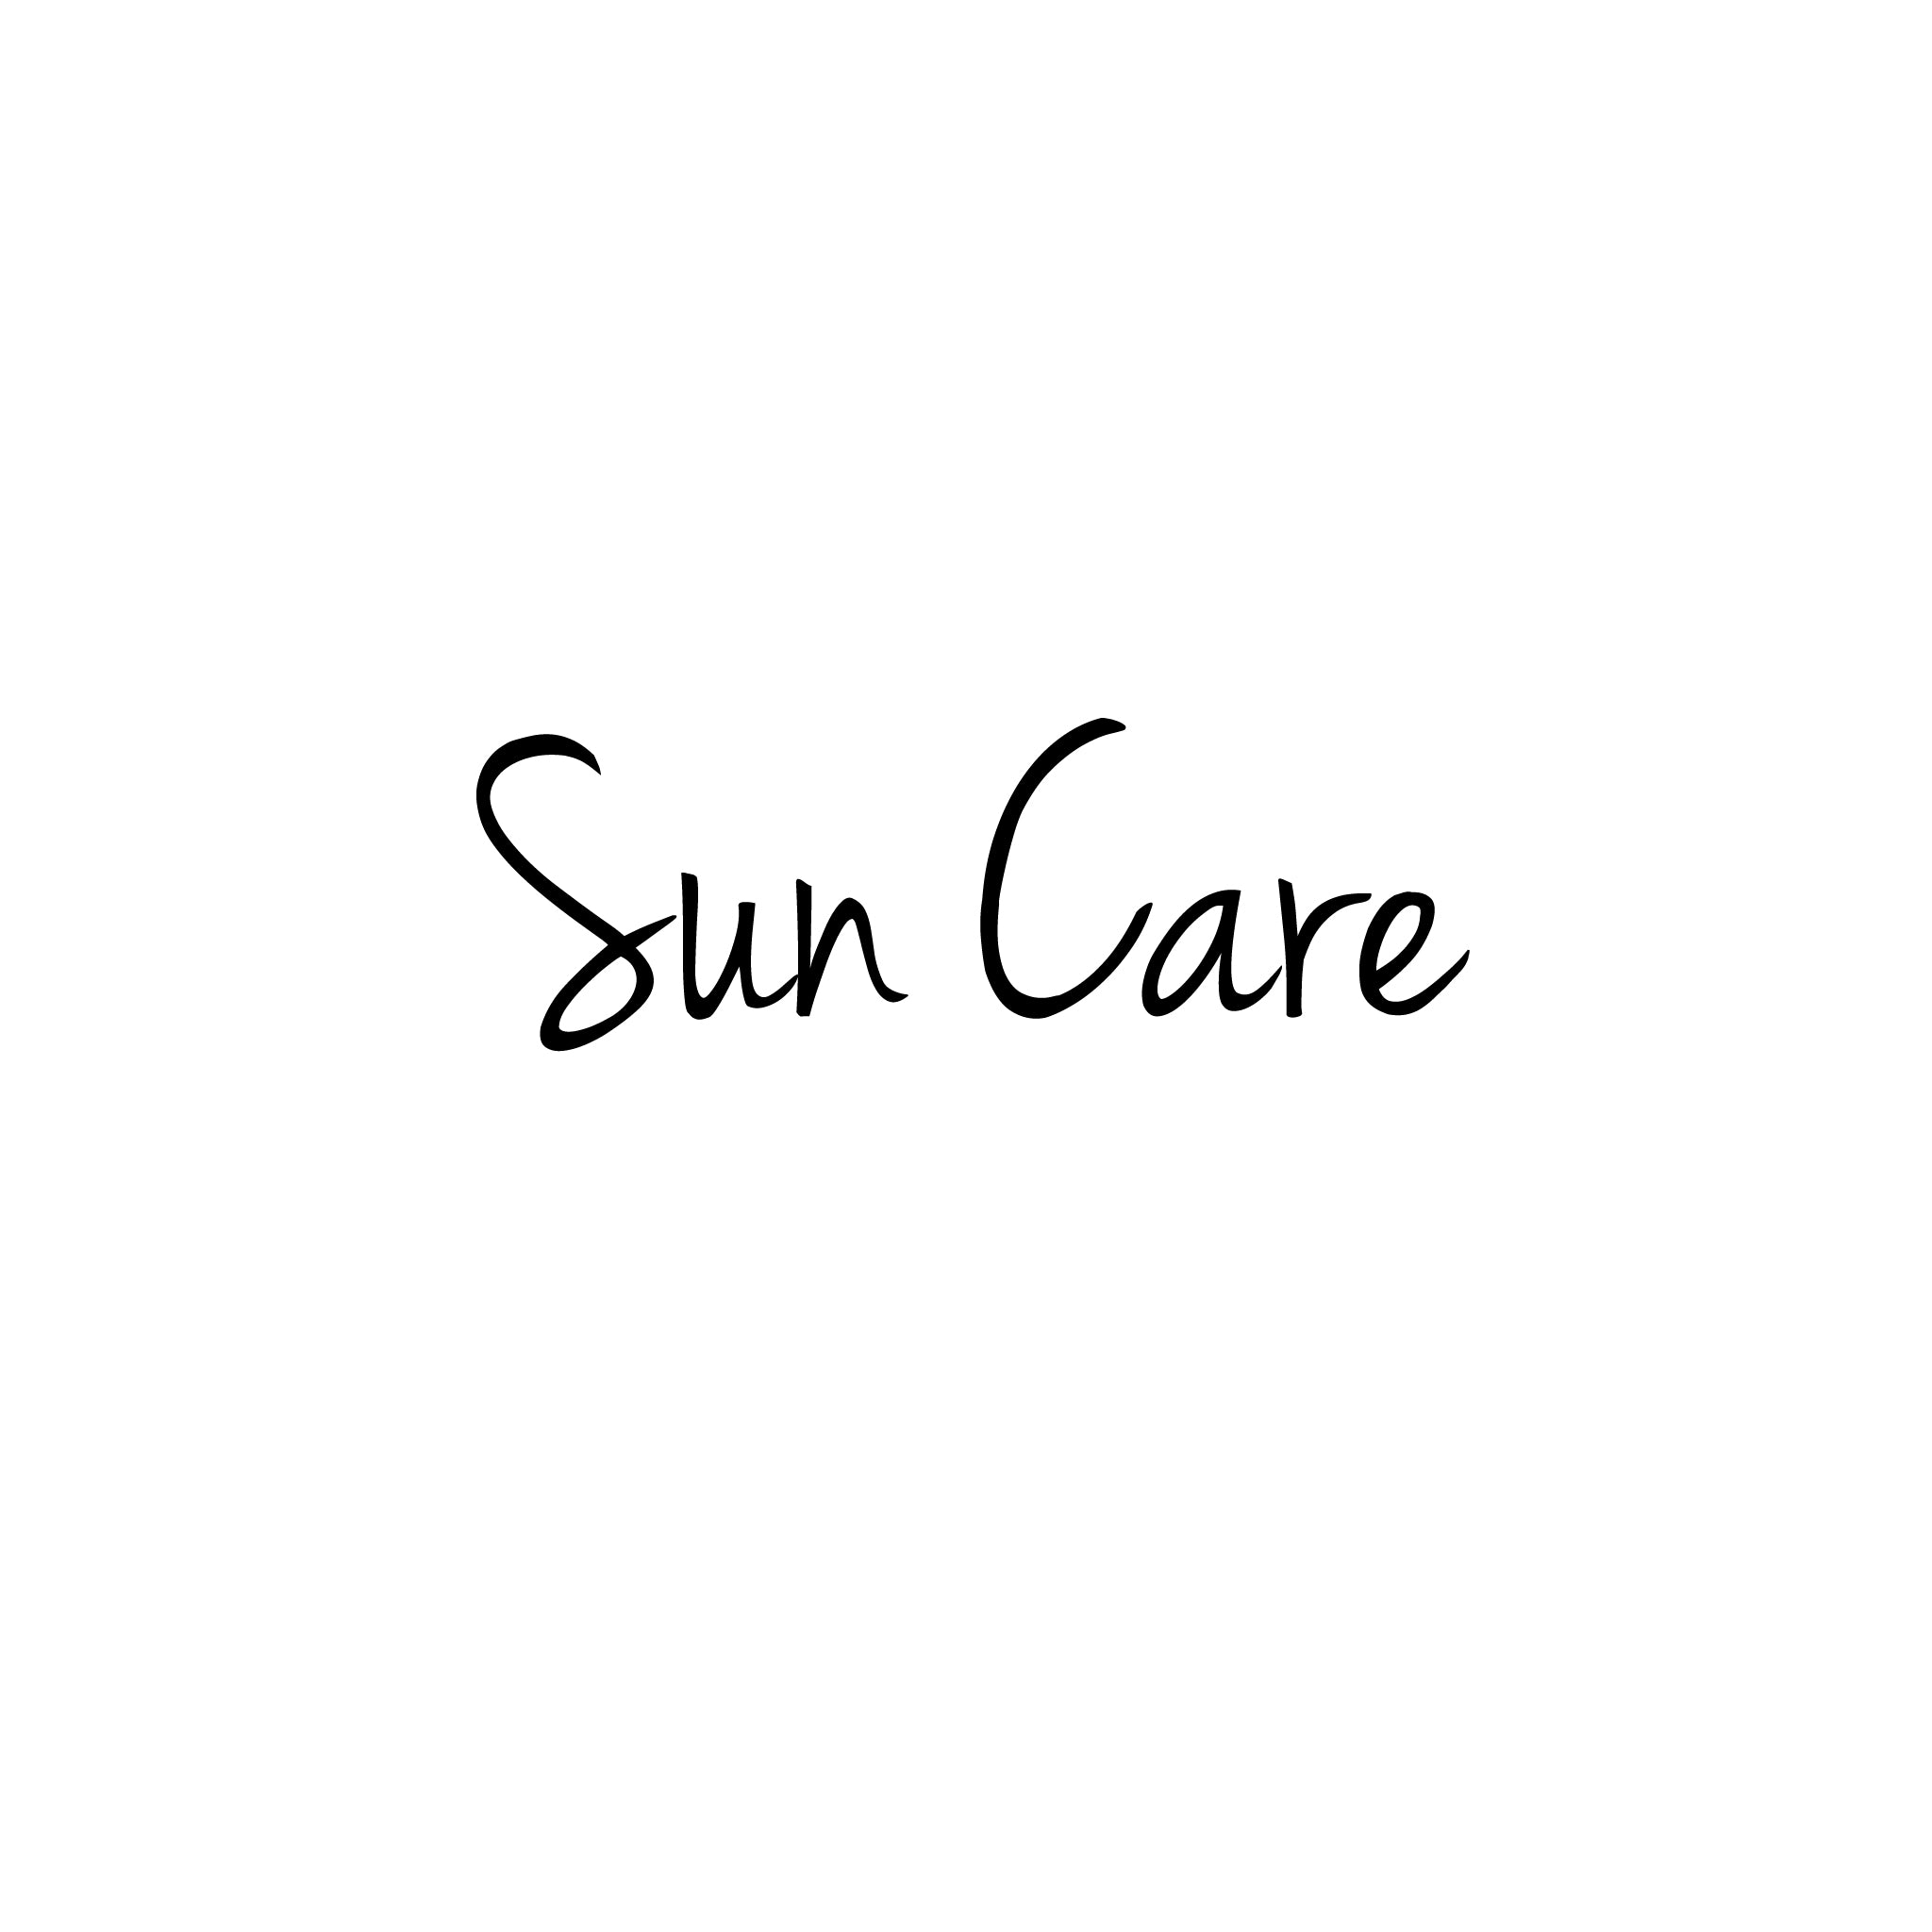 SUN CARE